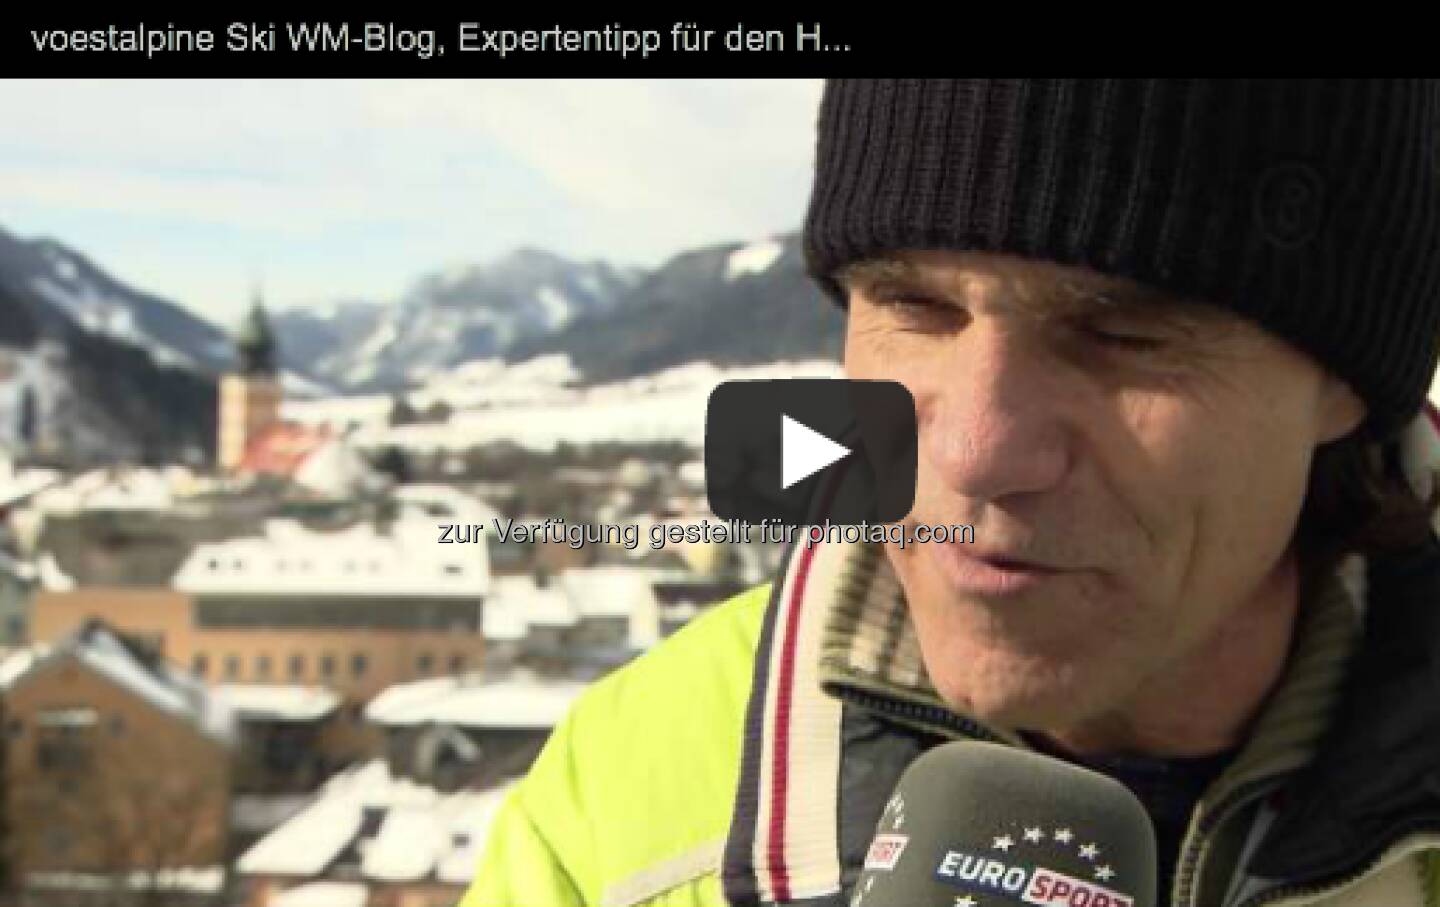 Wer gewinnt den Herren-Slalom? Eurosport-Experte Frank Wörndl tippt: http://voestalpine-wm-blog.at/2013/02/17/ein-expertentipp-zum-spannenden-finale/#.USDCOI7aK_Q